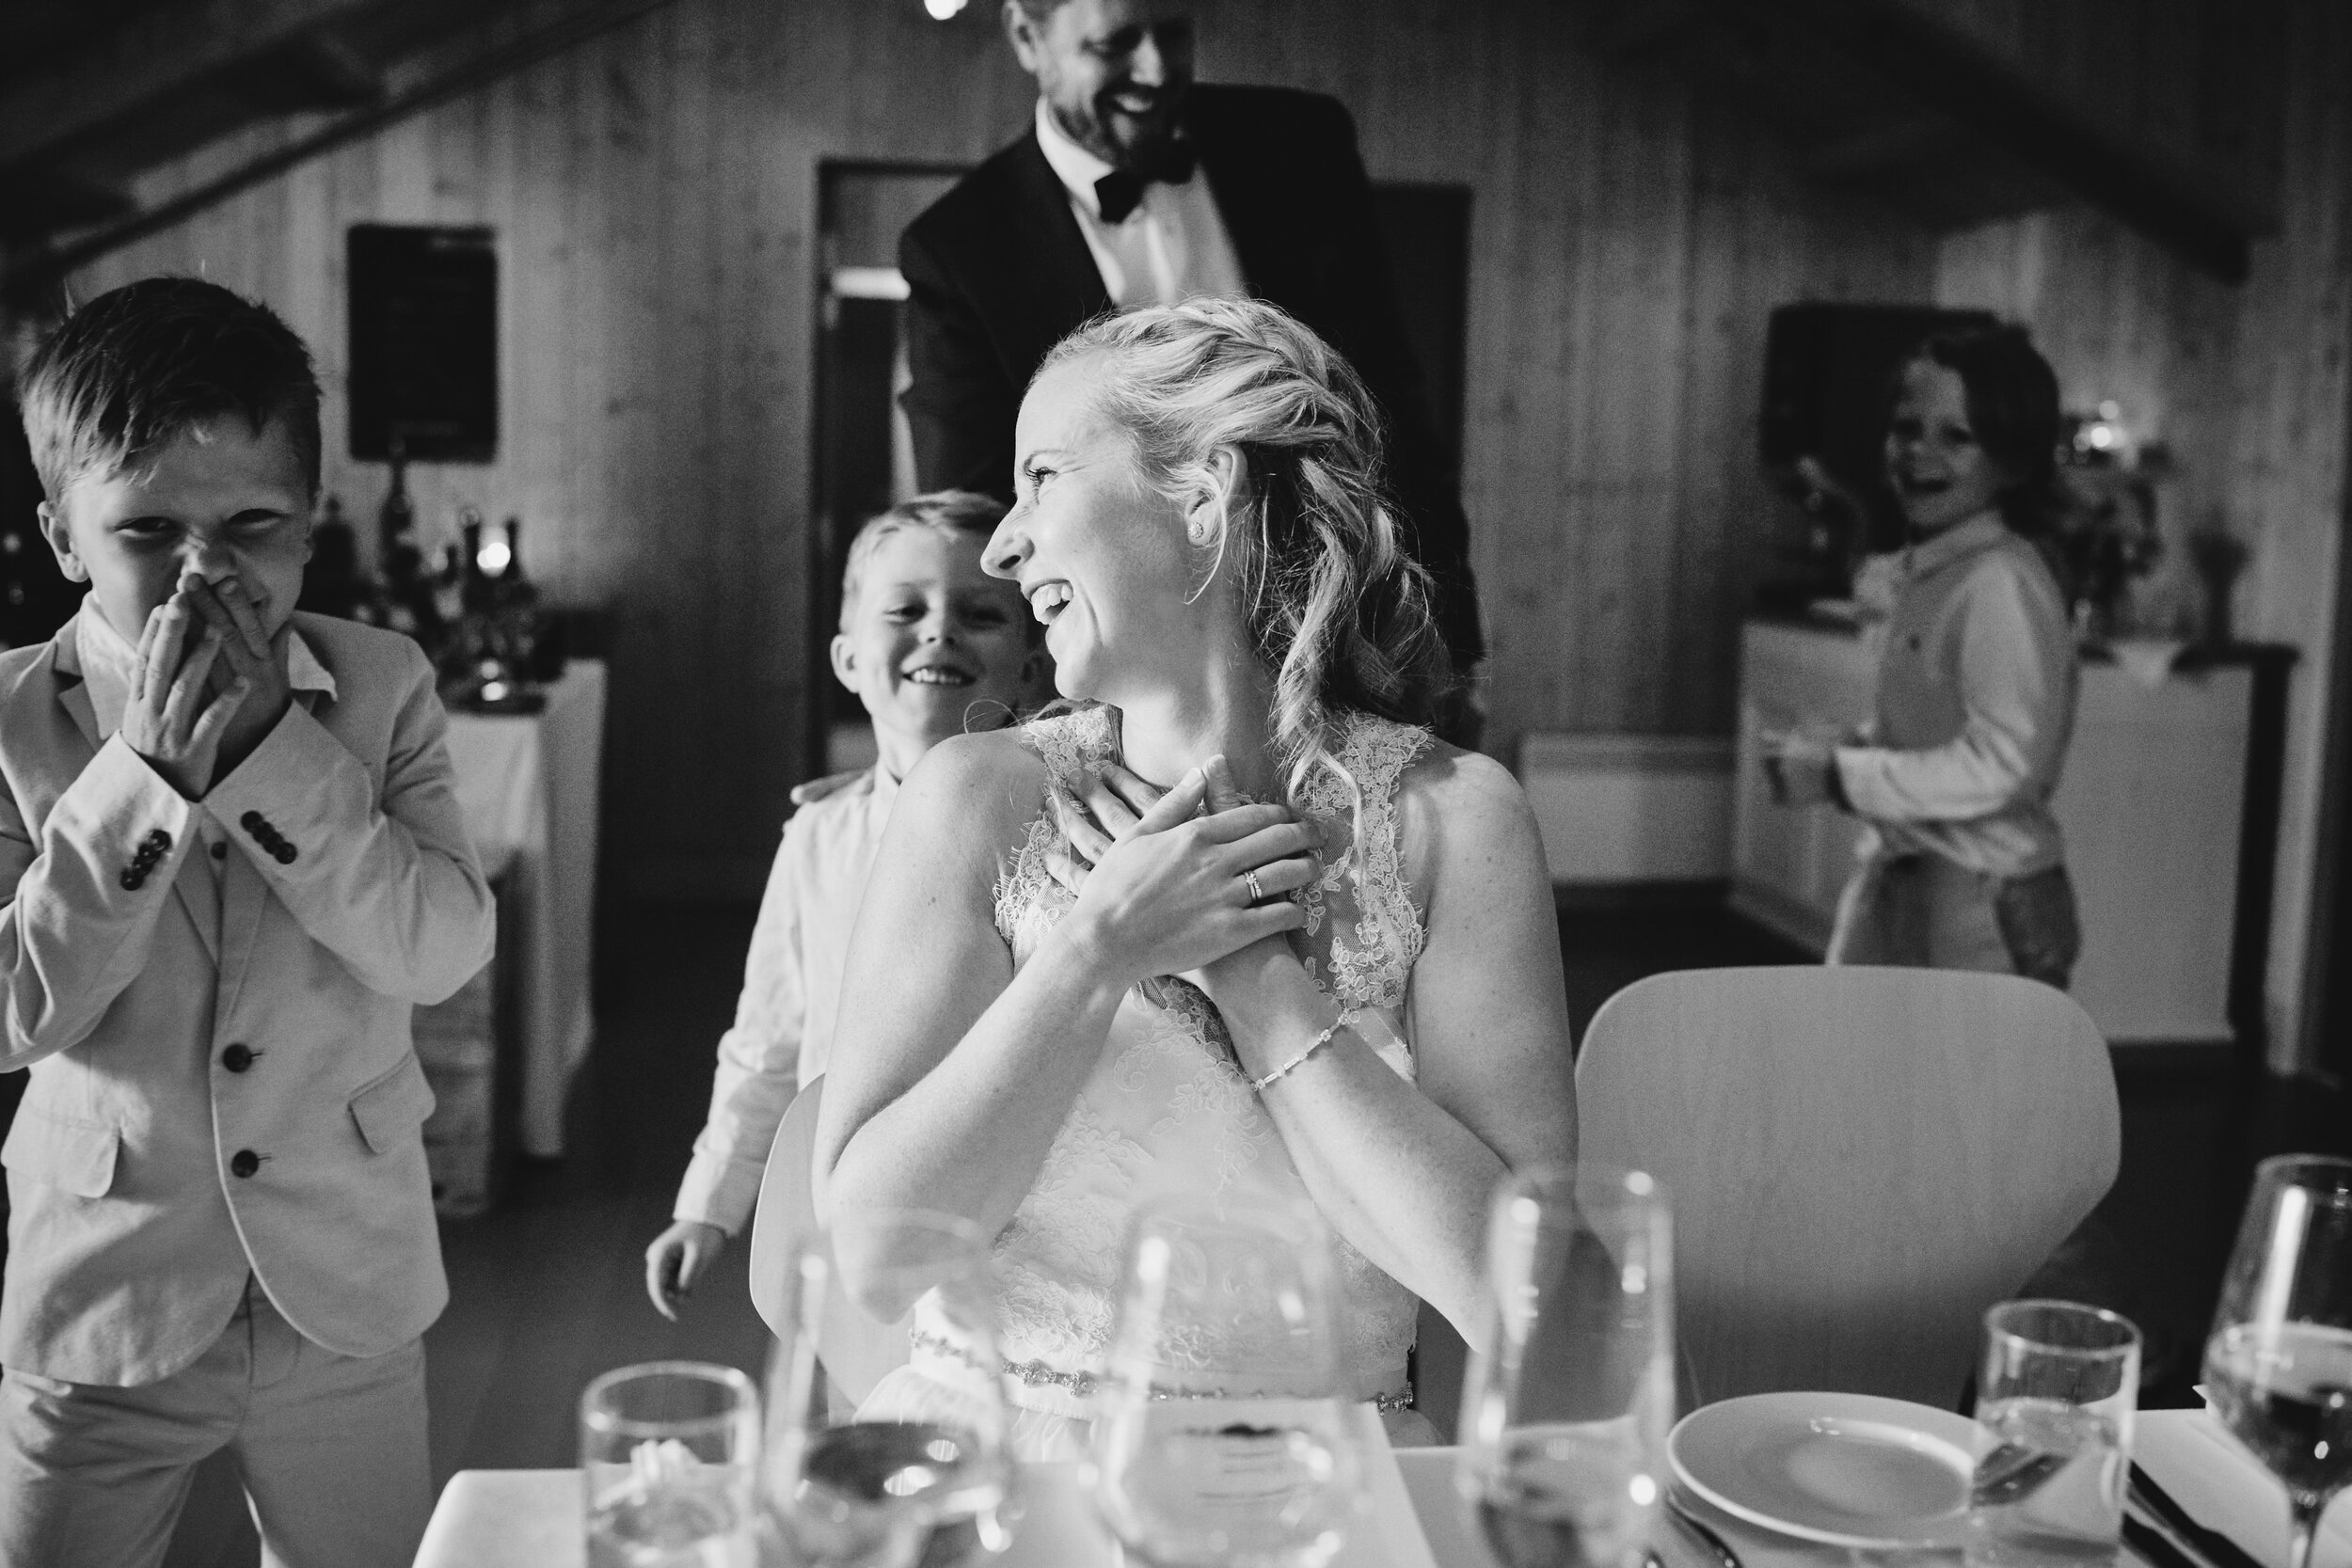   Bryllup i Lofoten:  Det var fint å se hva et intimt bryllup med få gjester gjorde med barna. De slo seg løs og koste seg gjennom hele middagen. Det var viktig for Silje og Bernt at bryllupet også ble barnas dag. Noe fint de kunne huske på resten av